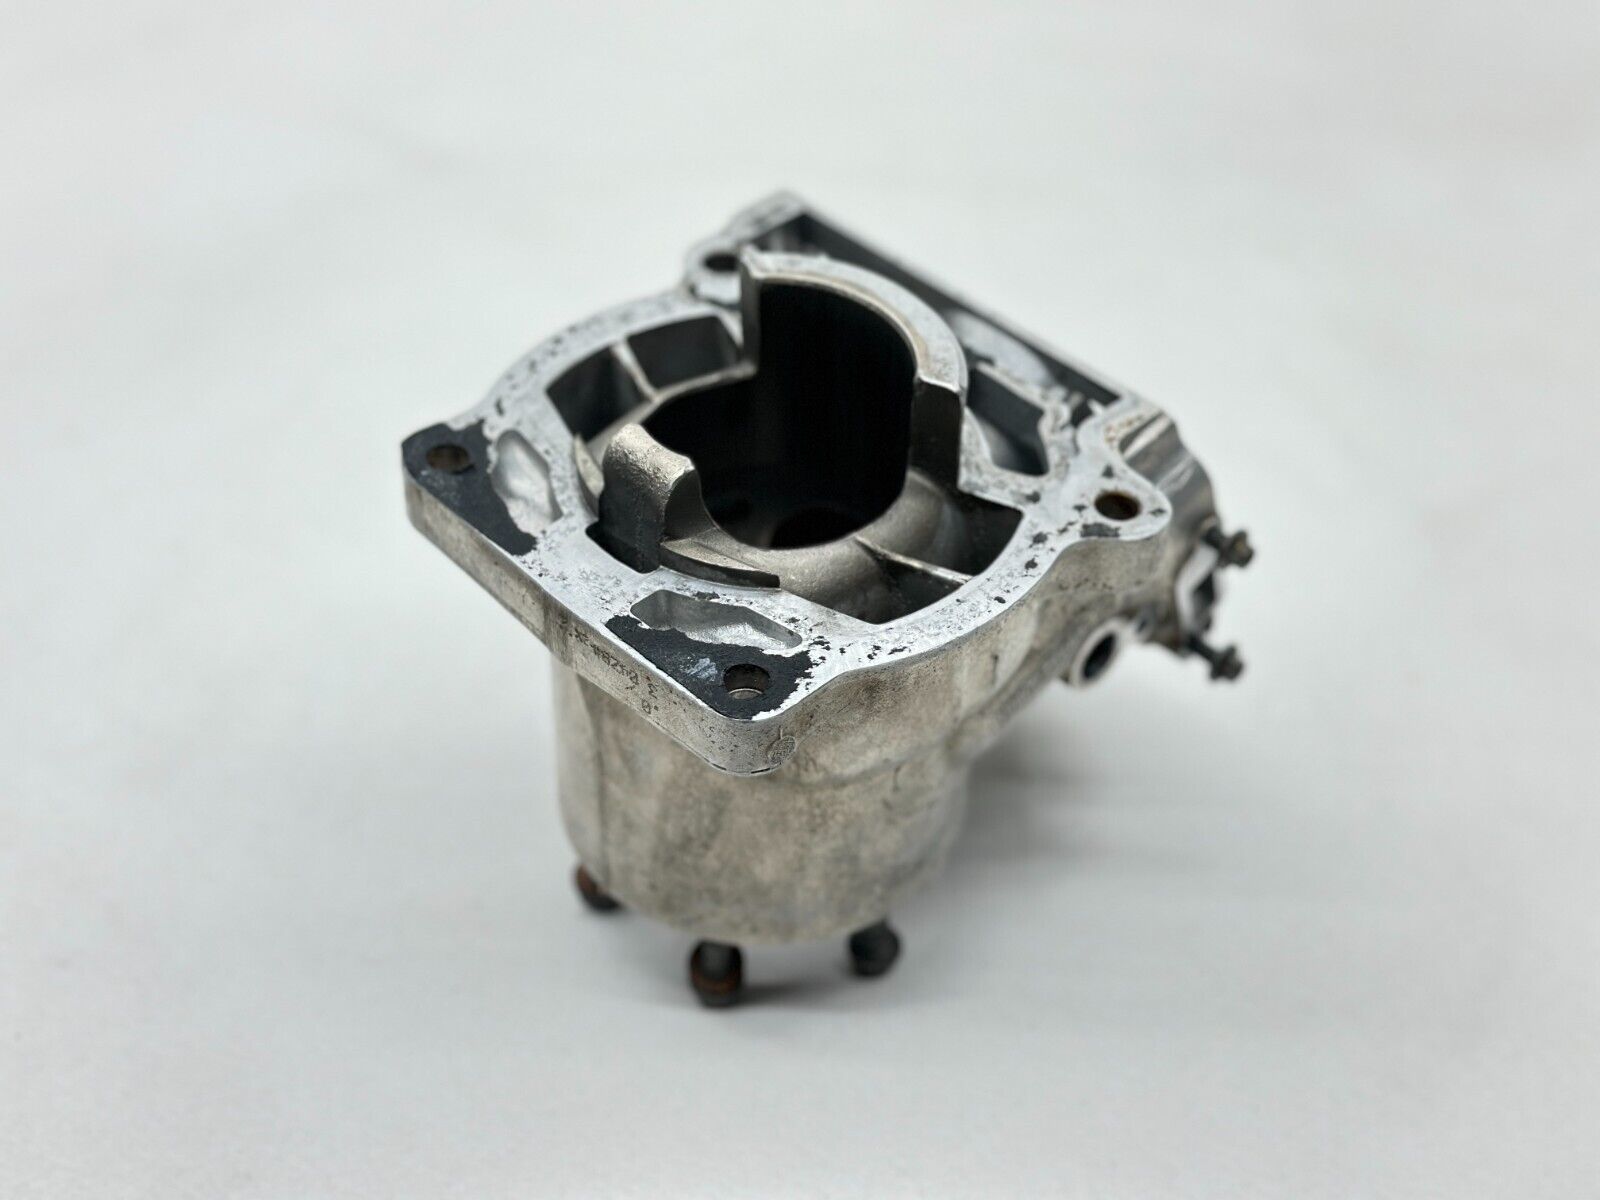 2011 KTM 150SX Cylinder Barrel Jug Piston Rings Top End Motor Engine 150 Damaged